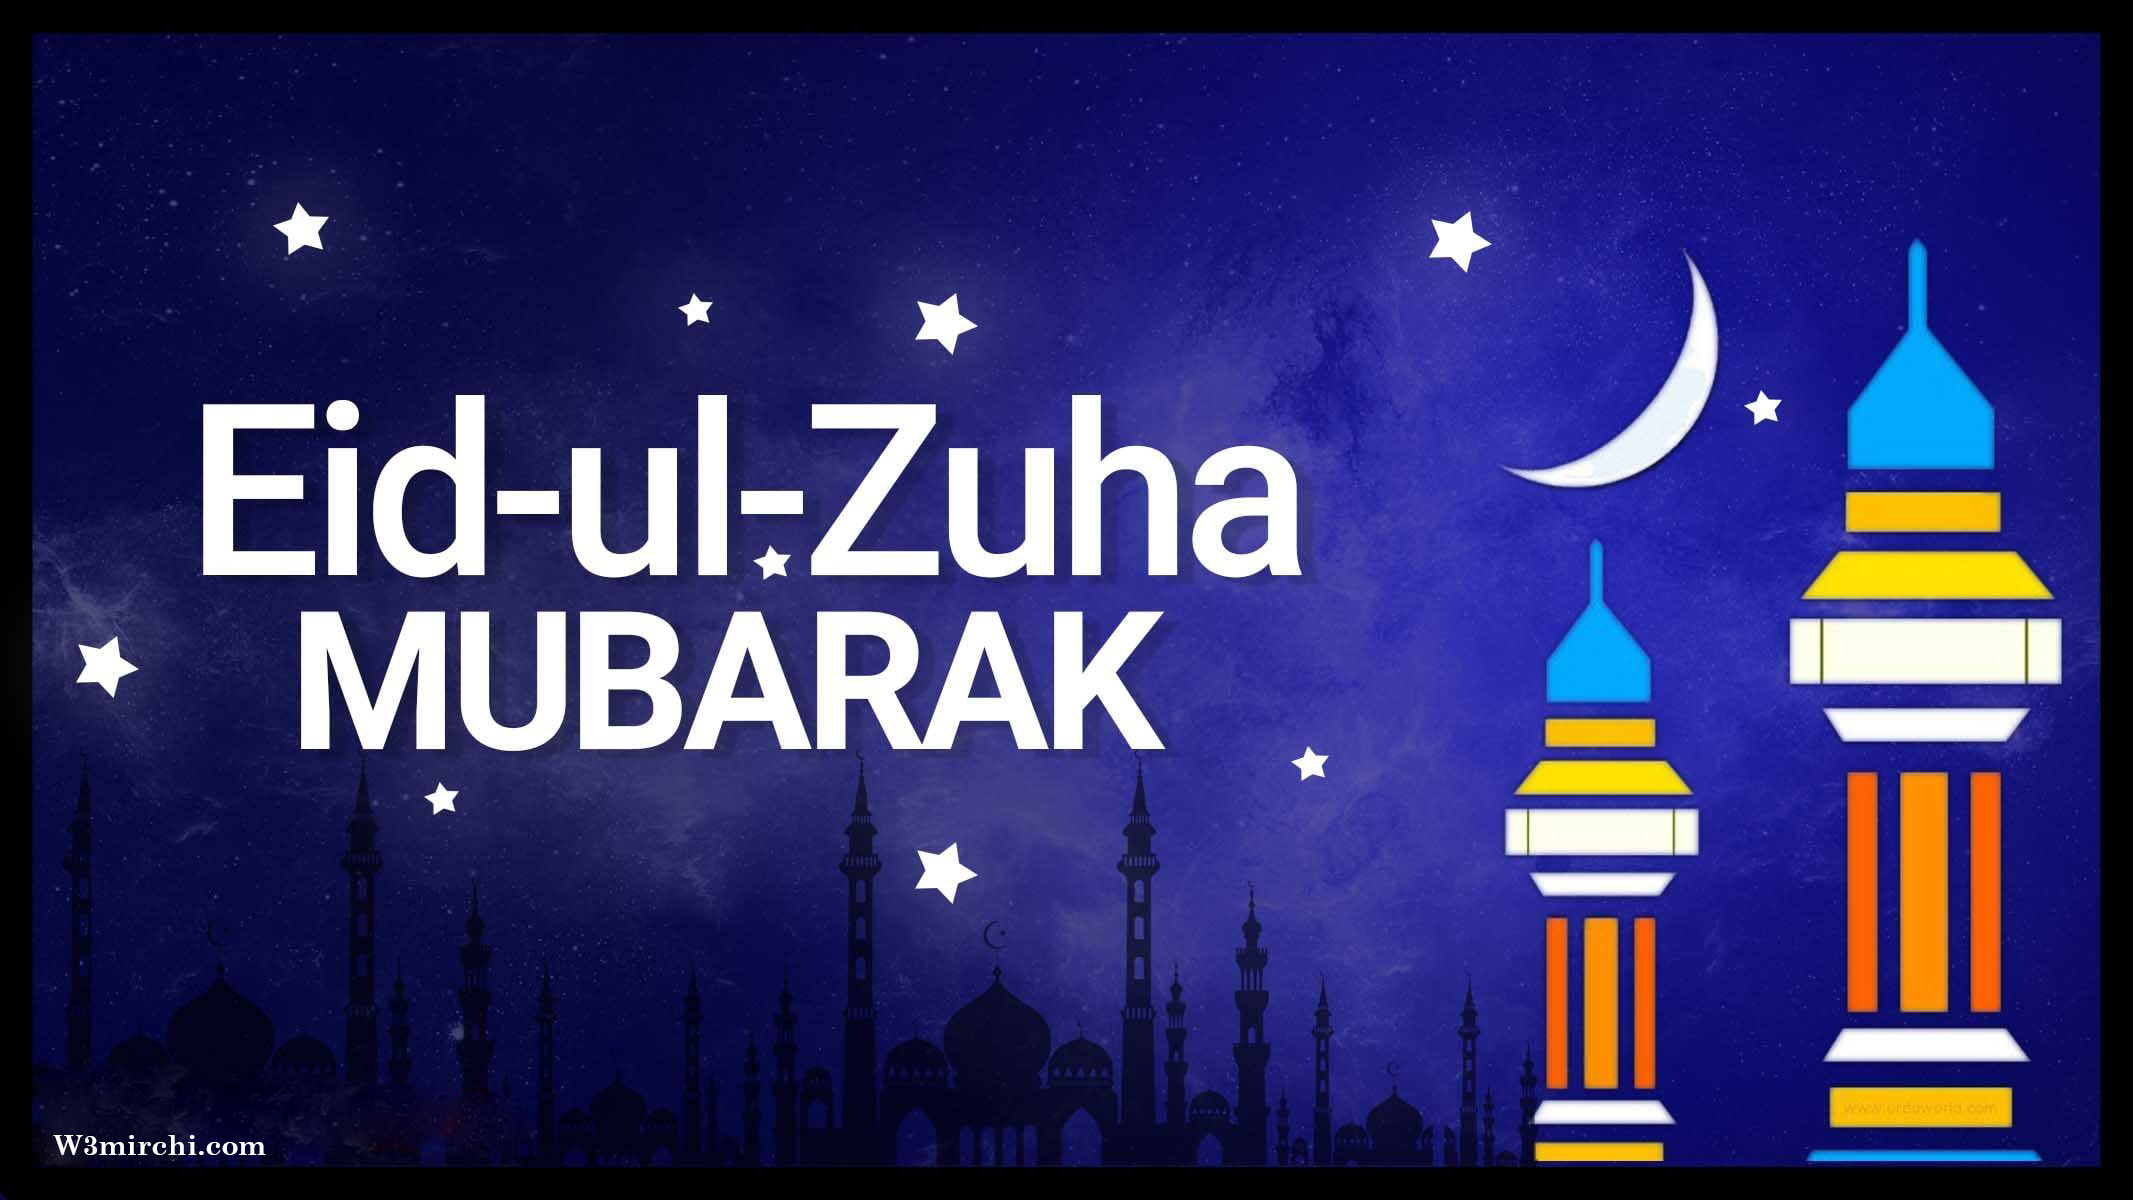 Eid-ul-Zuha Mubarak